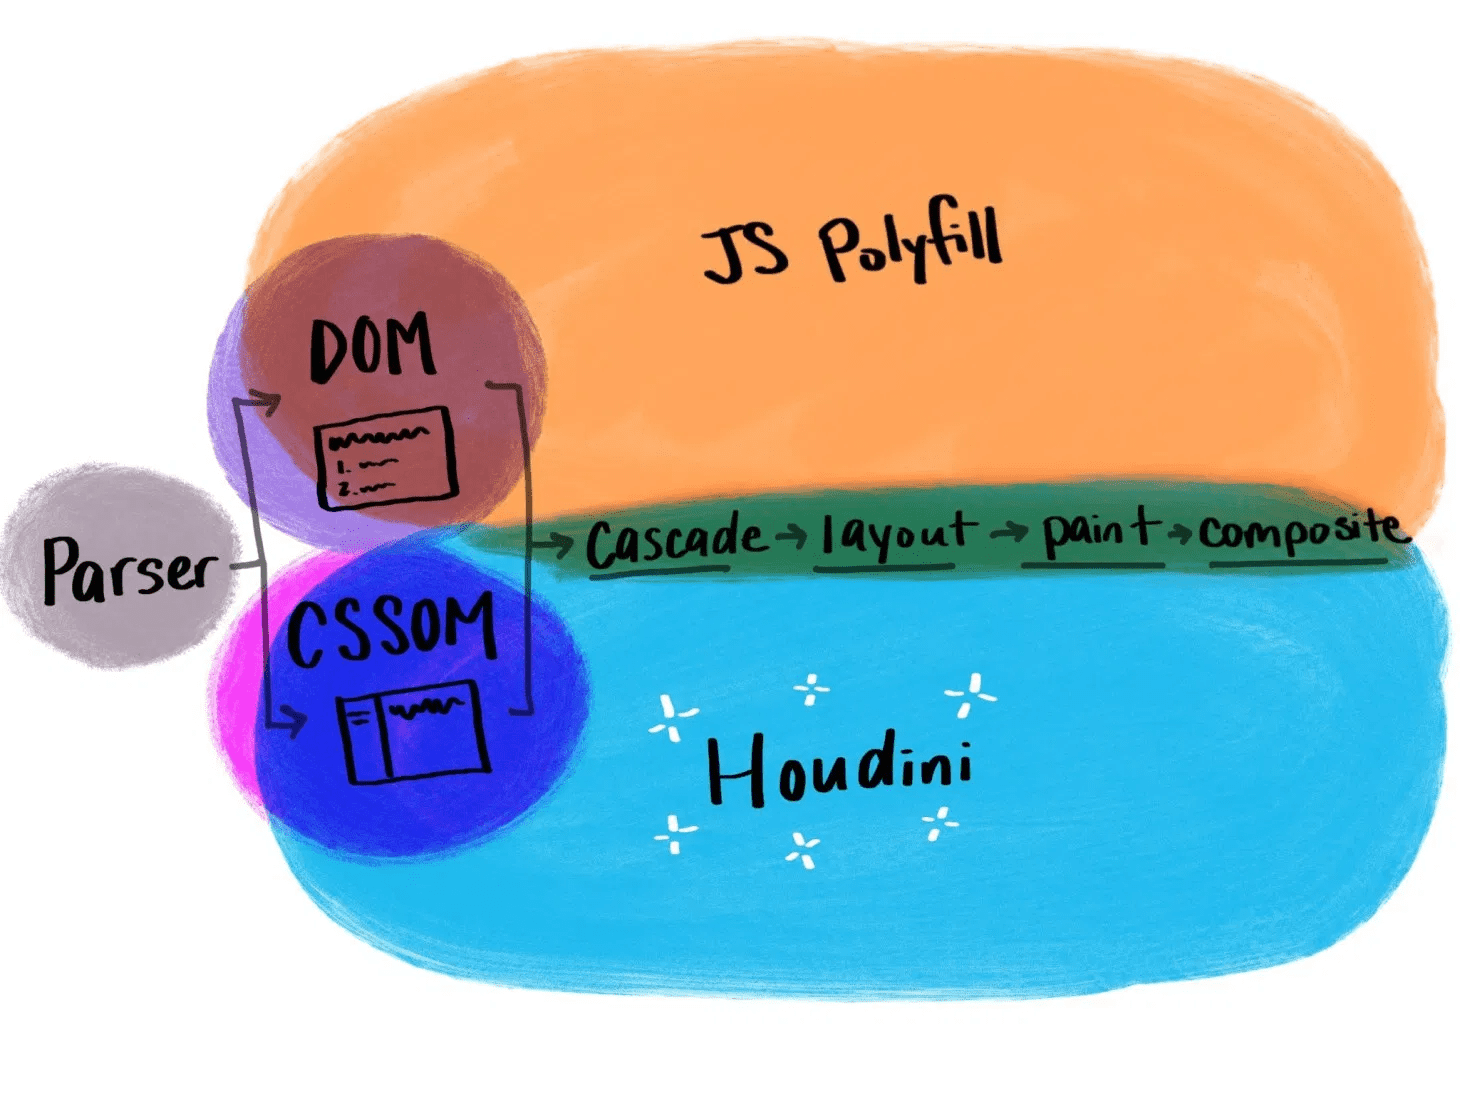 Ilustración que muestra cómo funciona Houdini en comparación con los polyfills tradicionales de JavaScript.